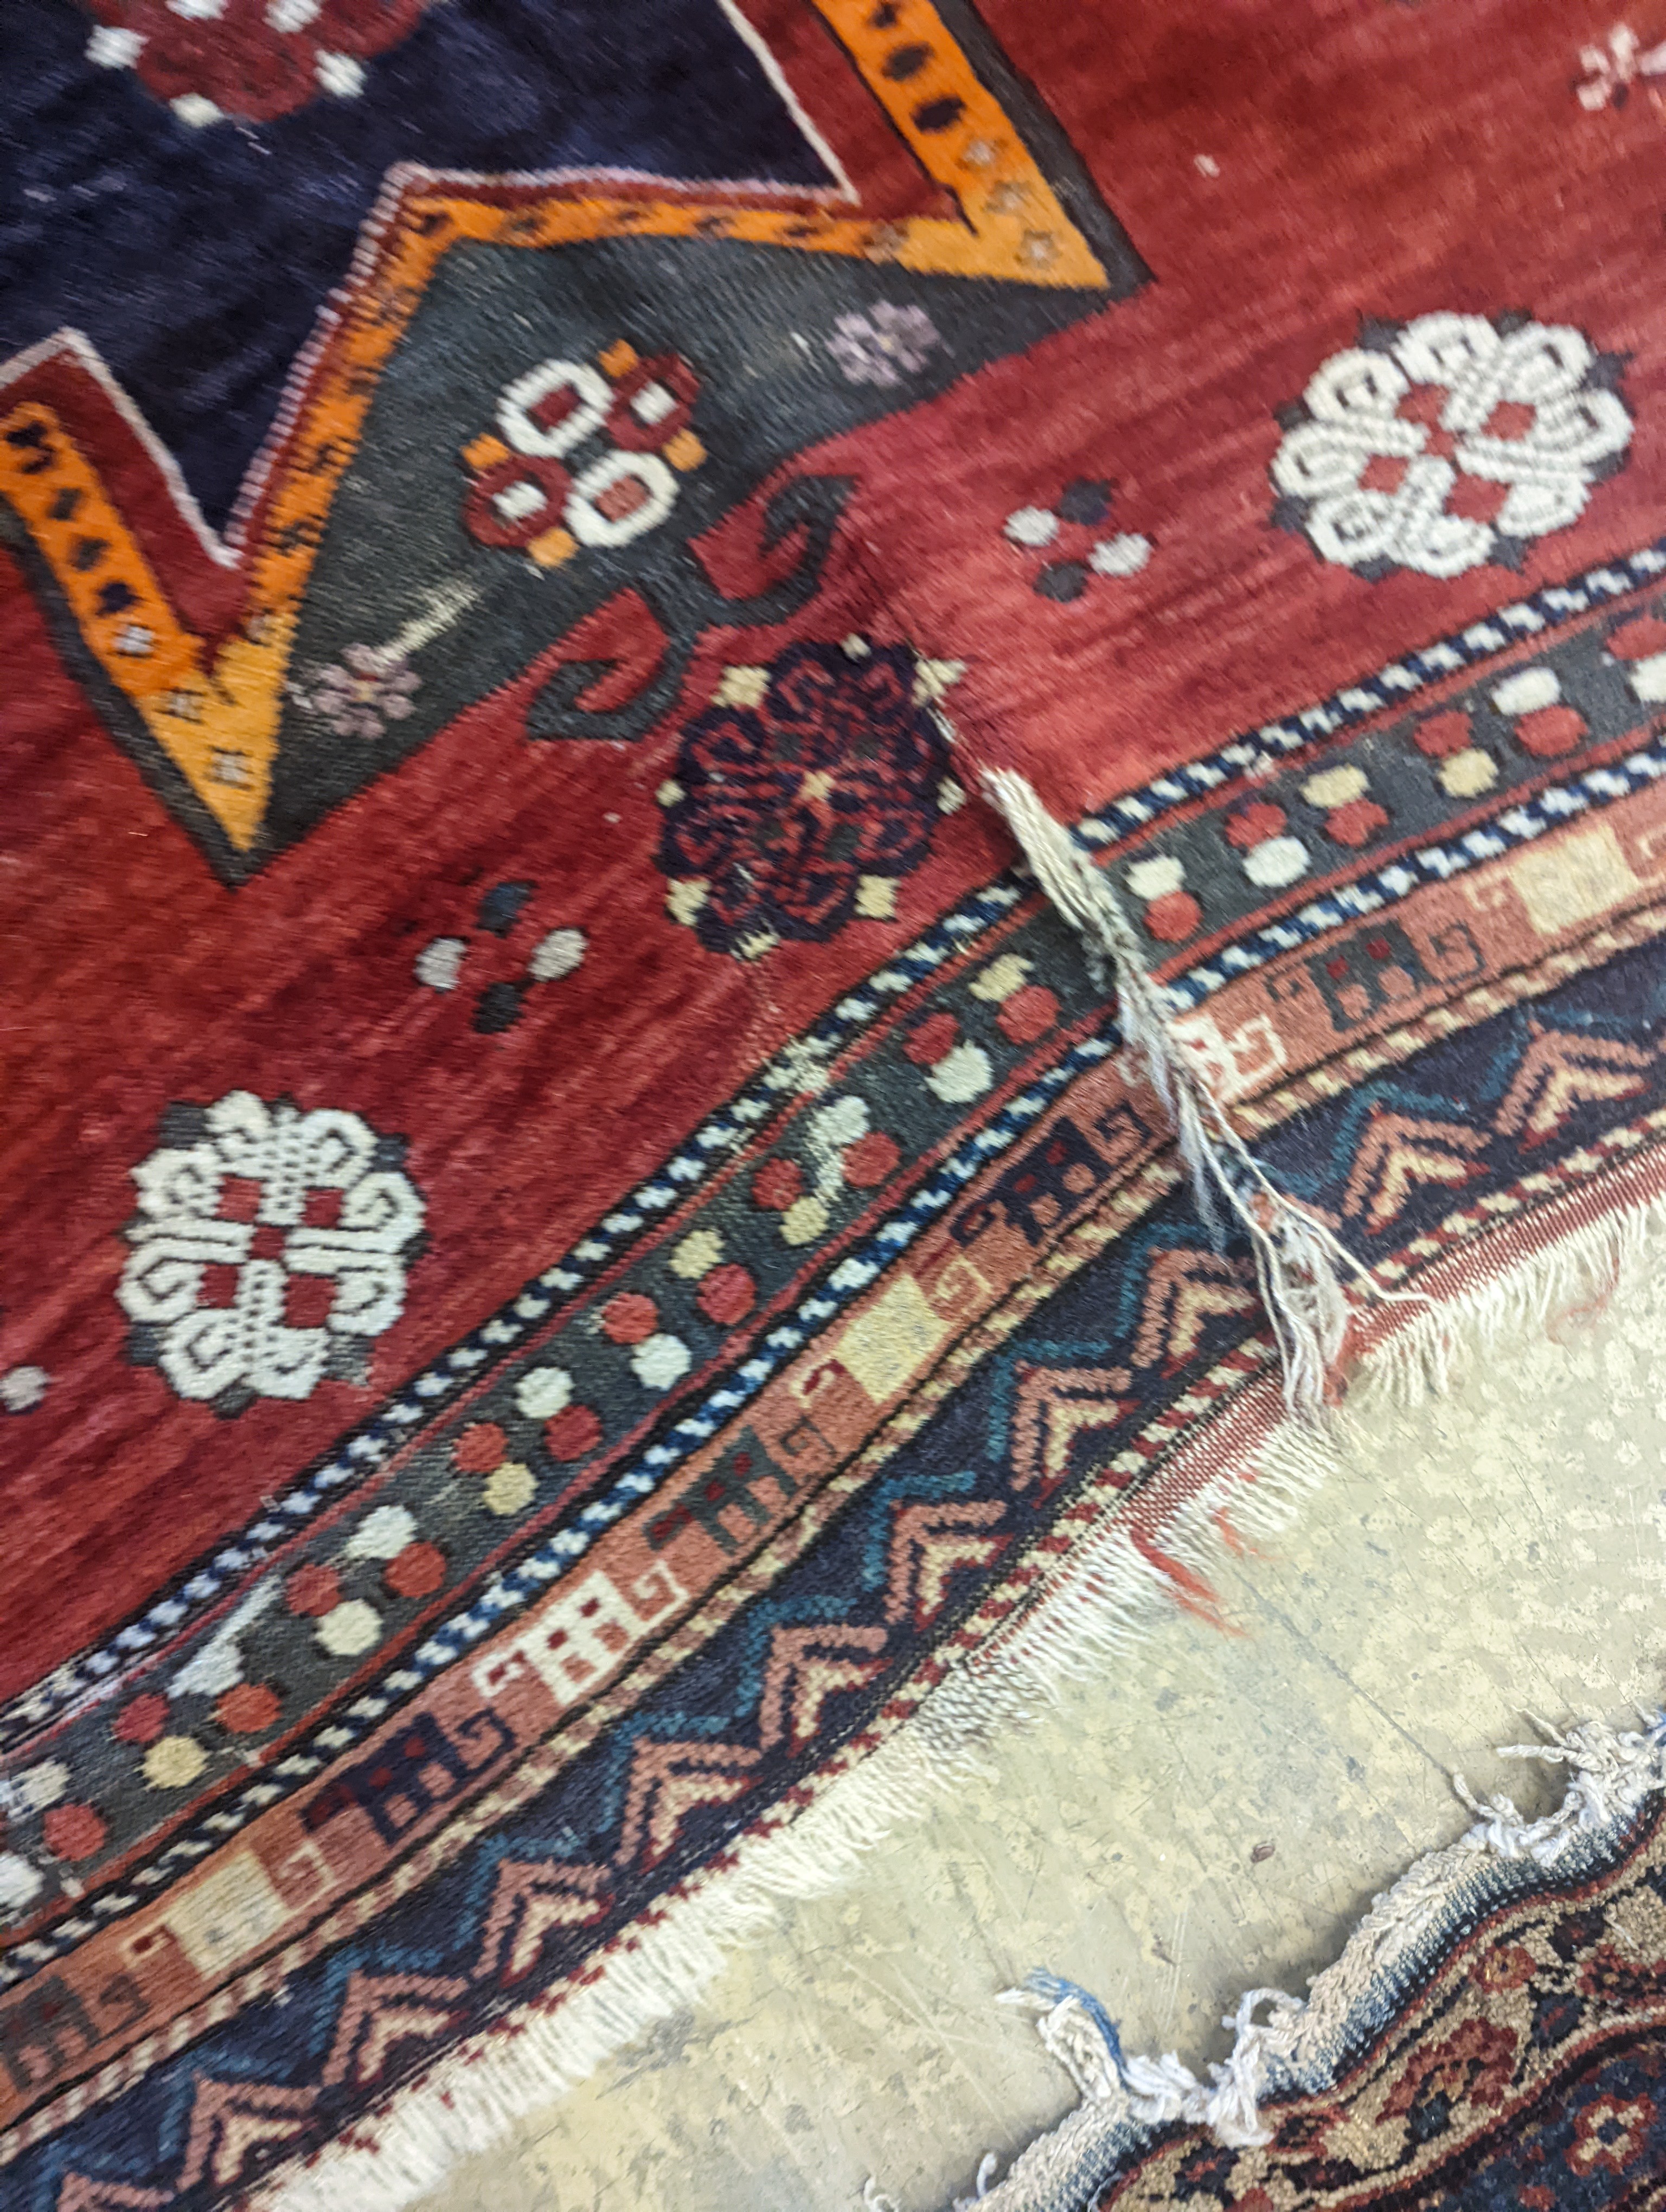 A Kazak red ground rug, 210 x 160cm